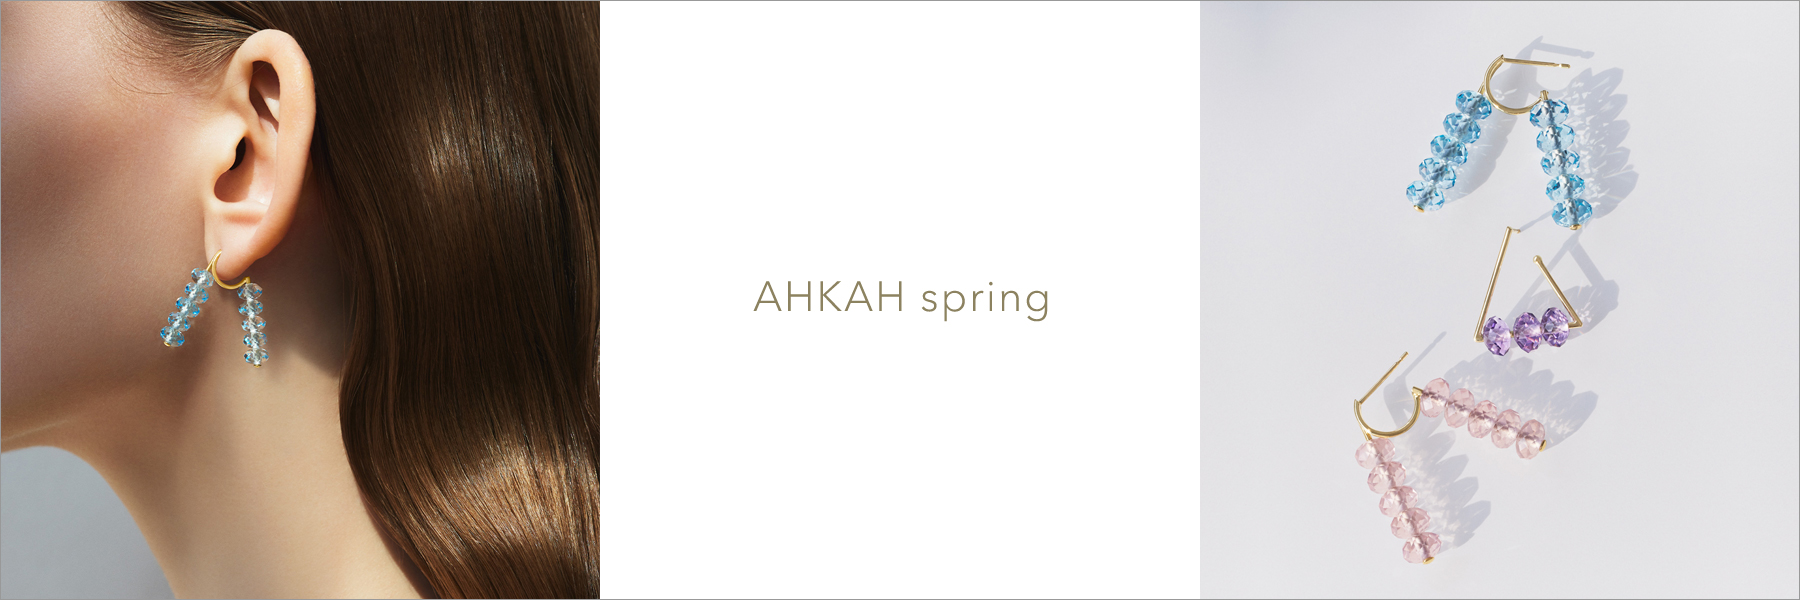 ahkah_spring